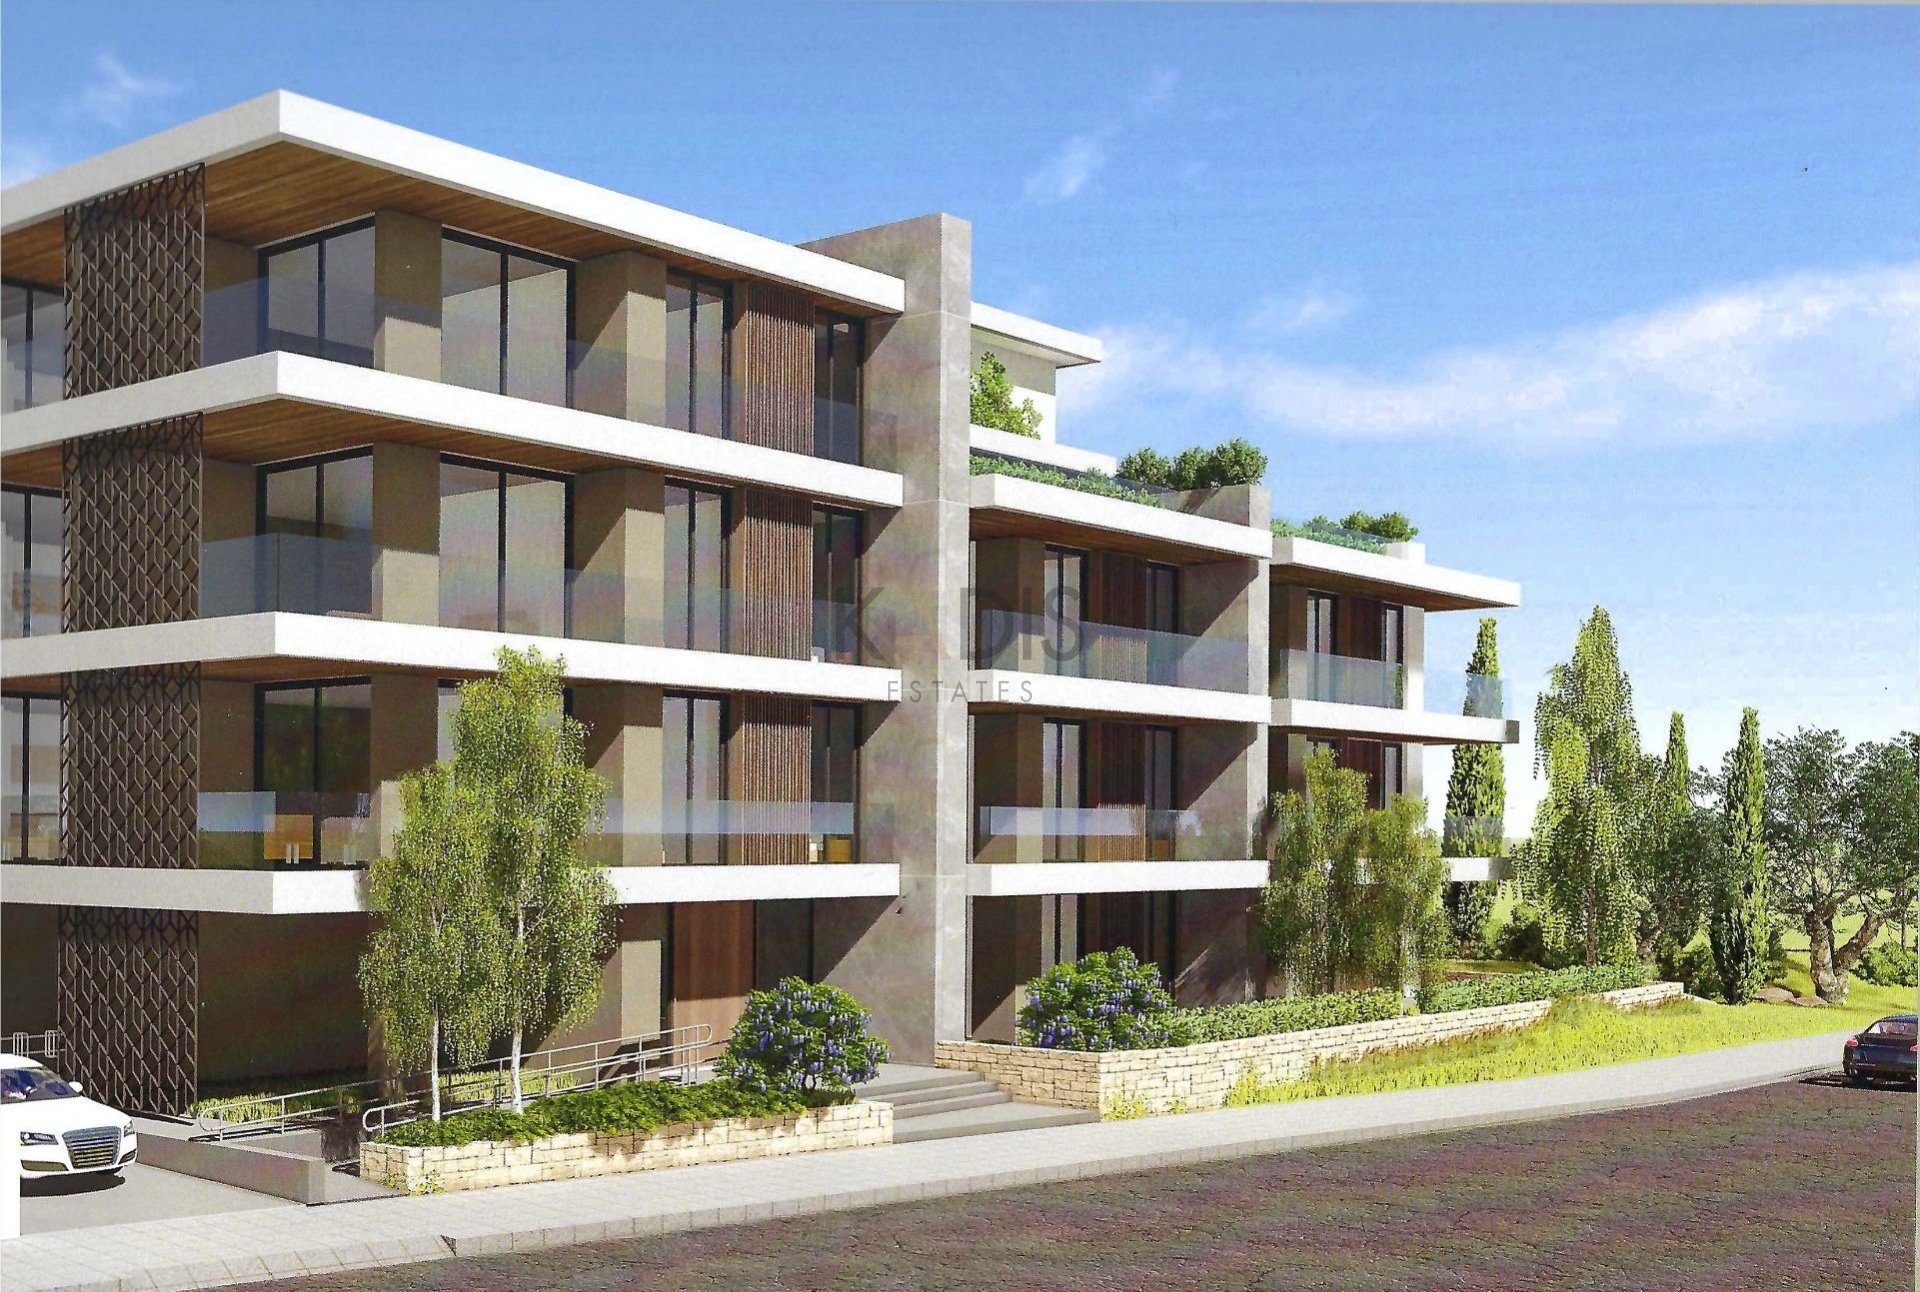 4,200m² Plot for Sale in Aglantzia, Nicosia District